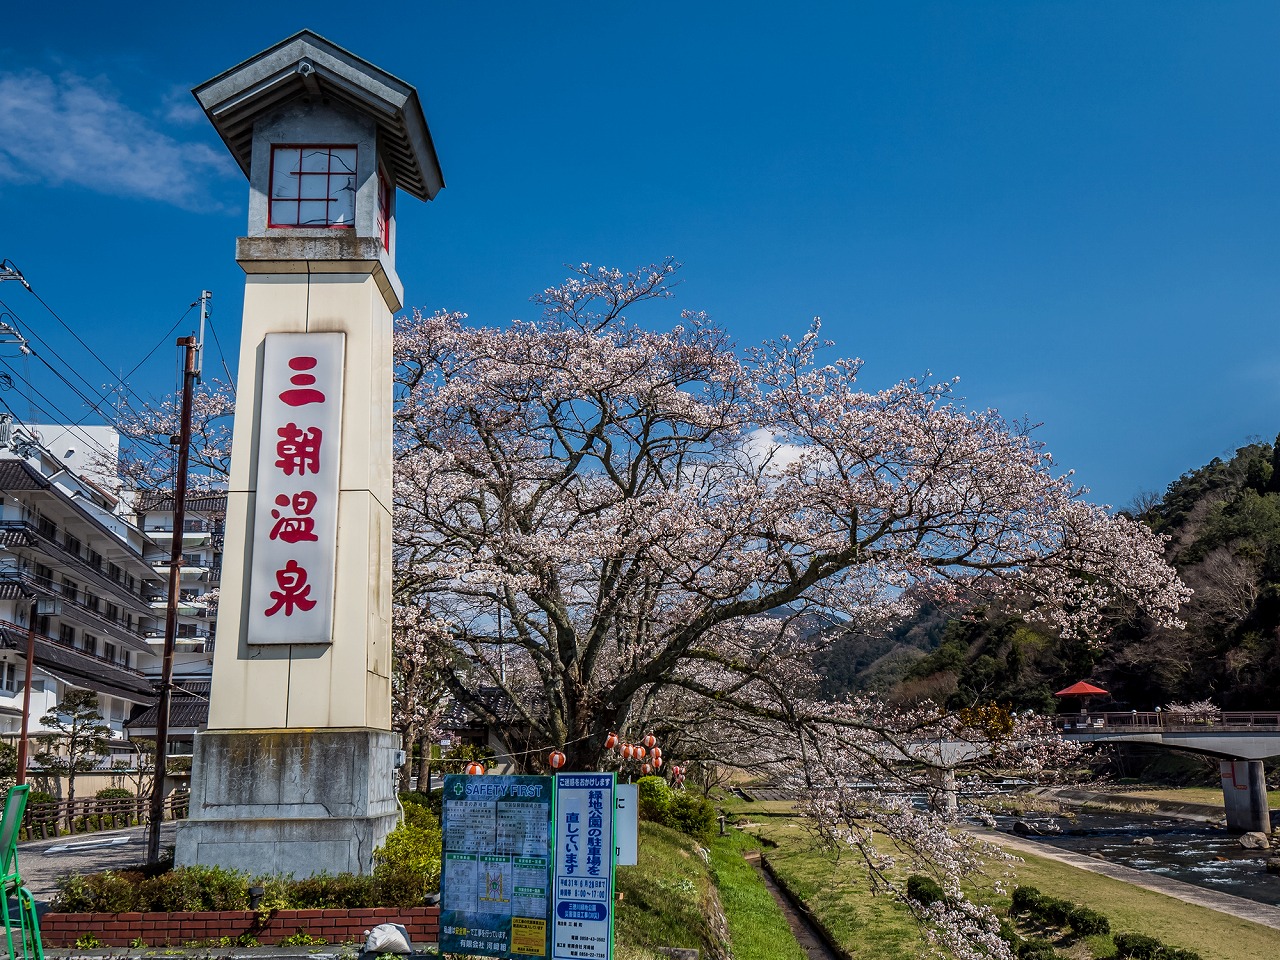 【保存版】鳥取の温泉旅館おすすめ30選【中国地方在住者が徹底紹介】源泉かけ流し・老舗・家族向け・絶景など